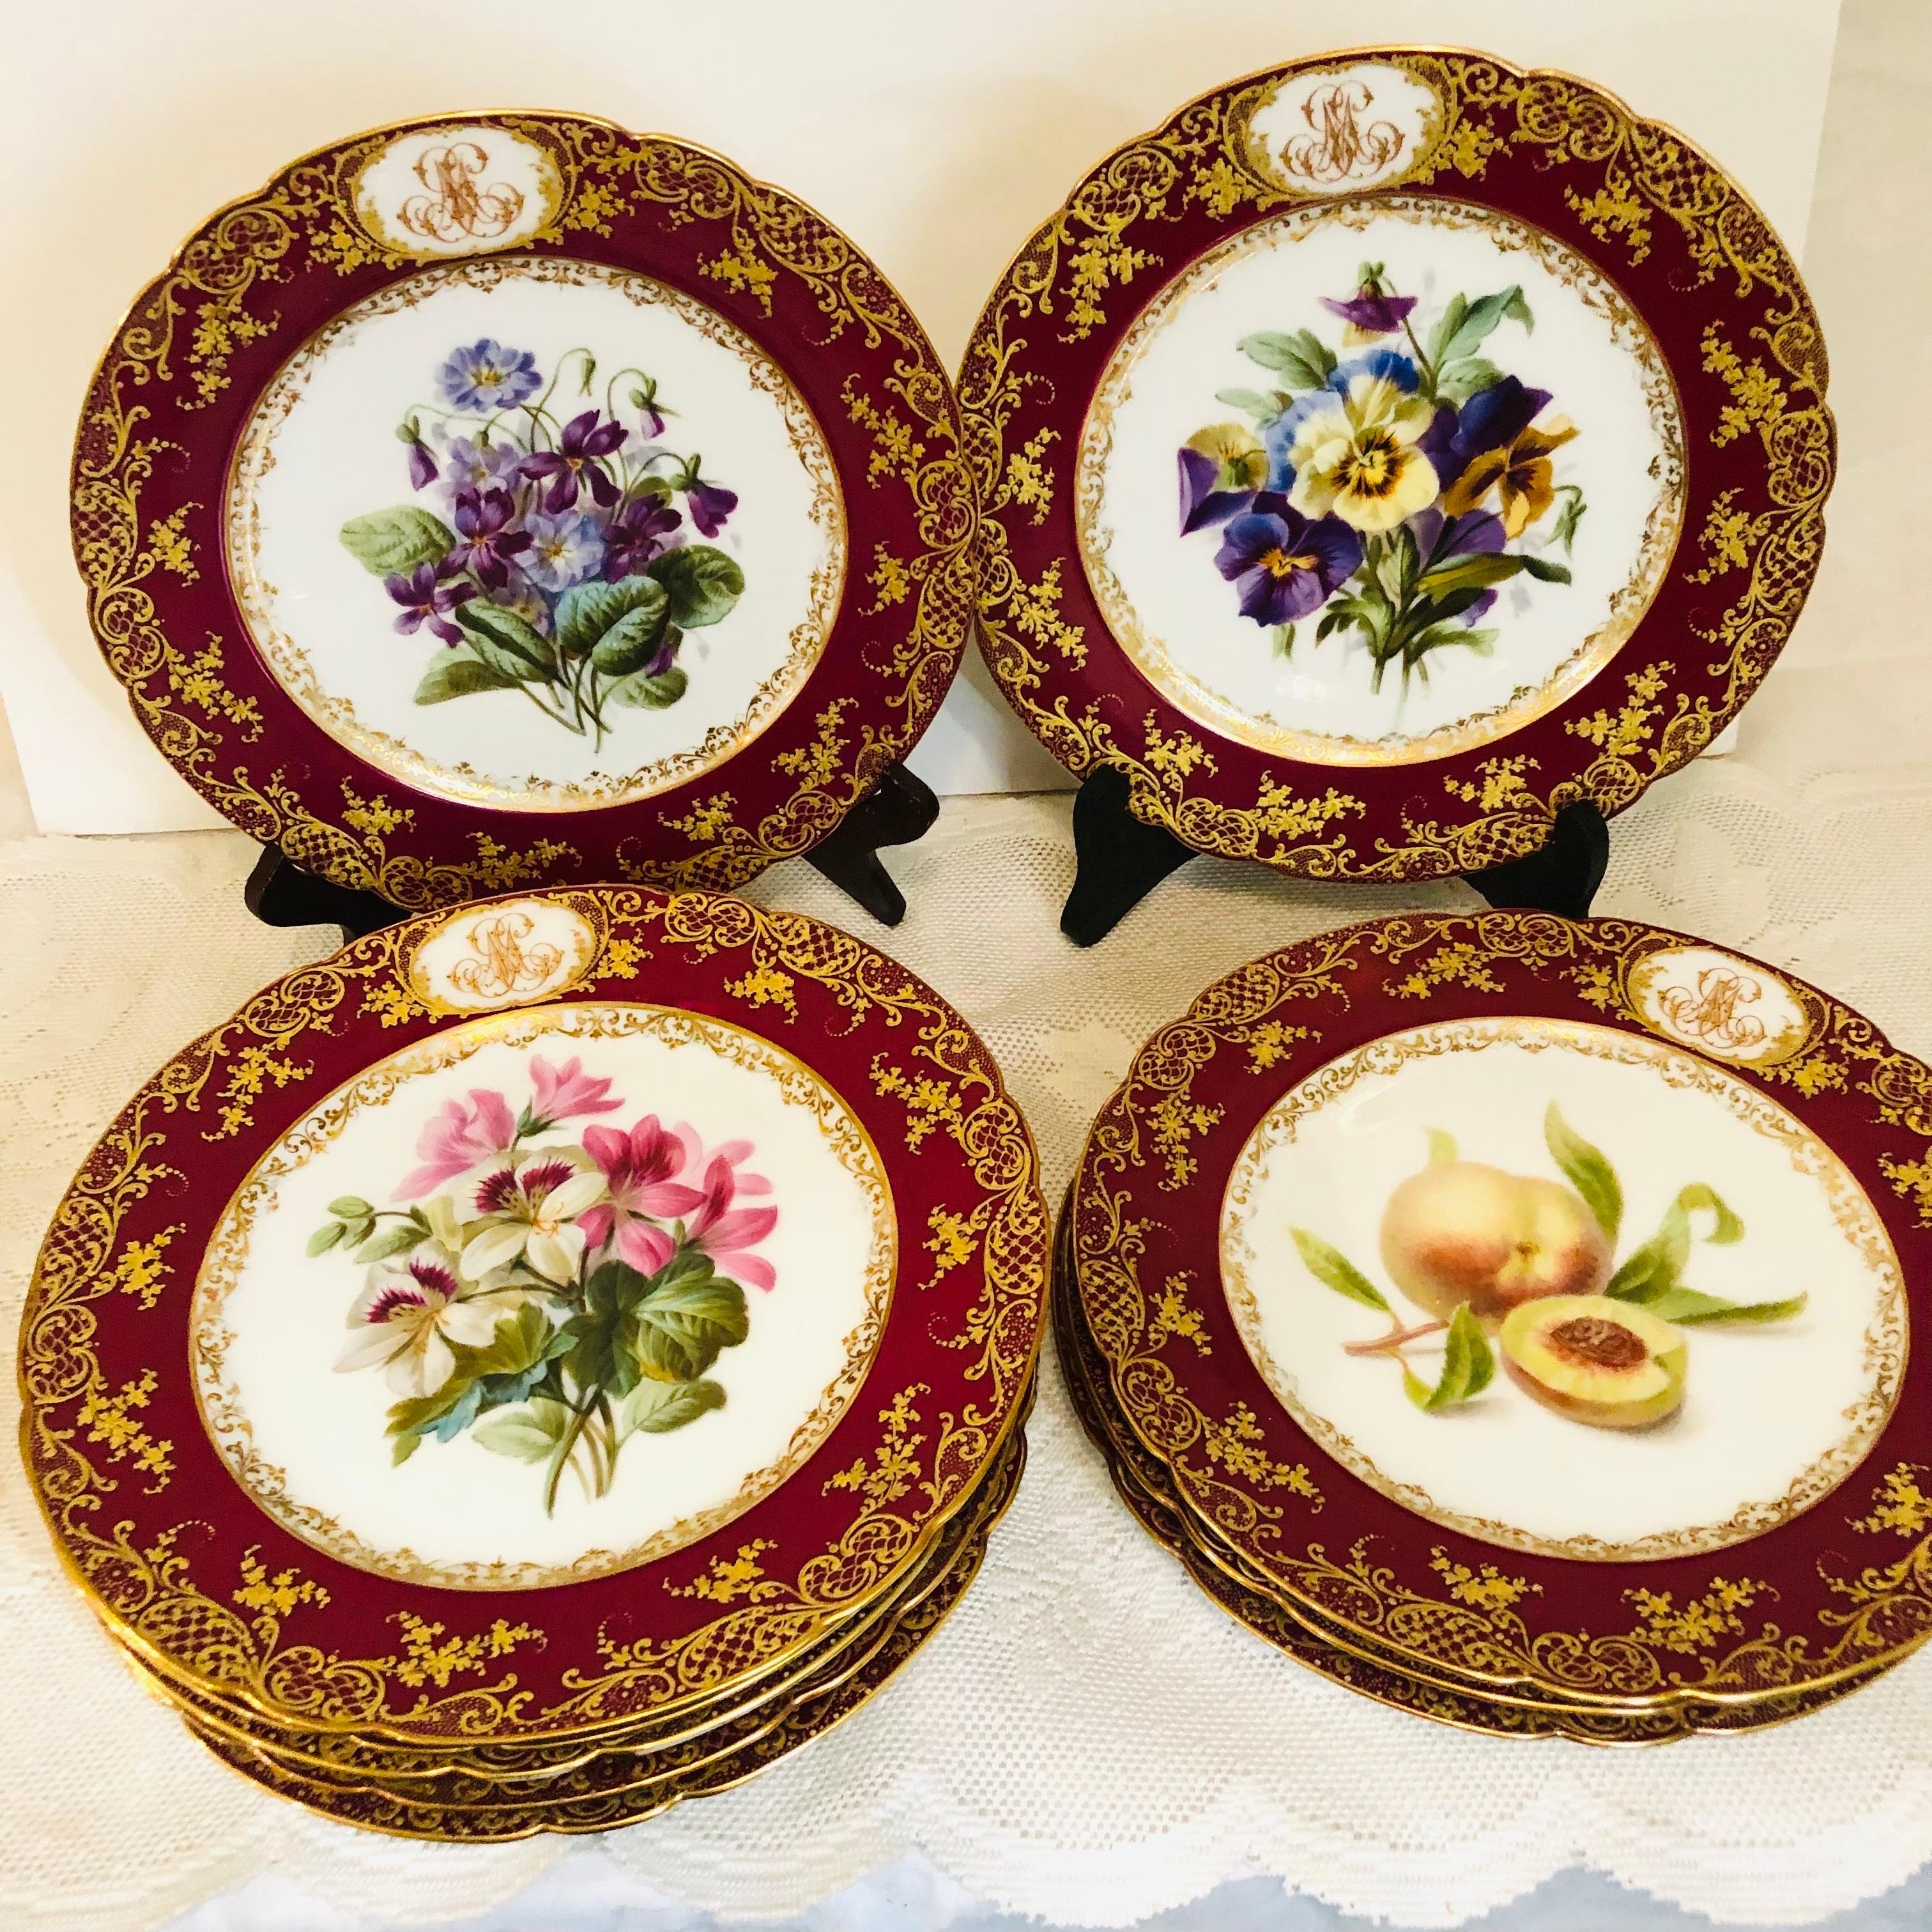 Regardez les peintures de qualité musée de bouquets de fleurs et de fruits sur cet ensemble de dix assiettes en porcelaine du Vieux Paris peintes par le studio de Boyer Rue De La Paix. Ils ont été fabriqués au milieu du 19e siècle. Chaque assiette